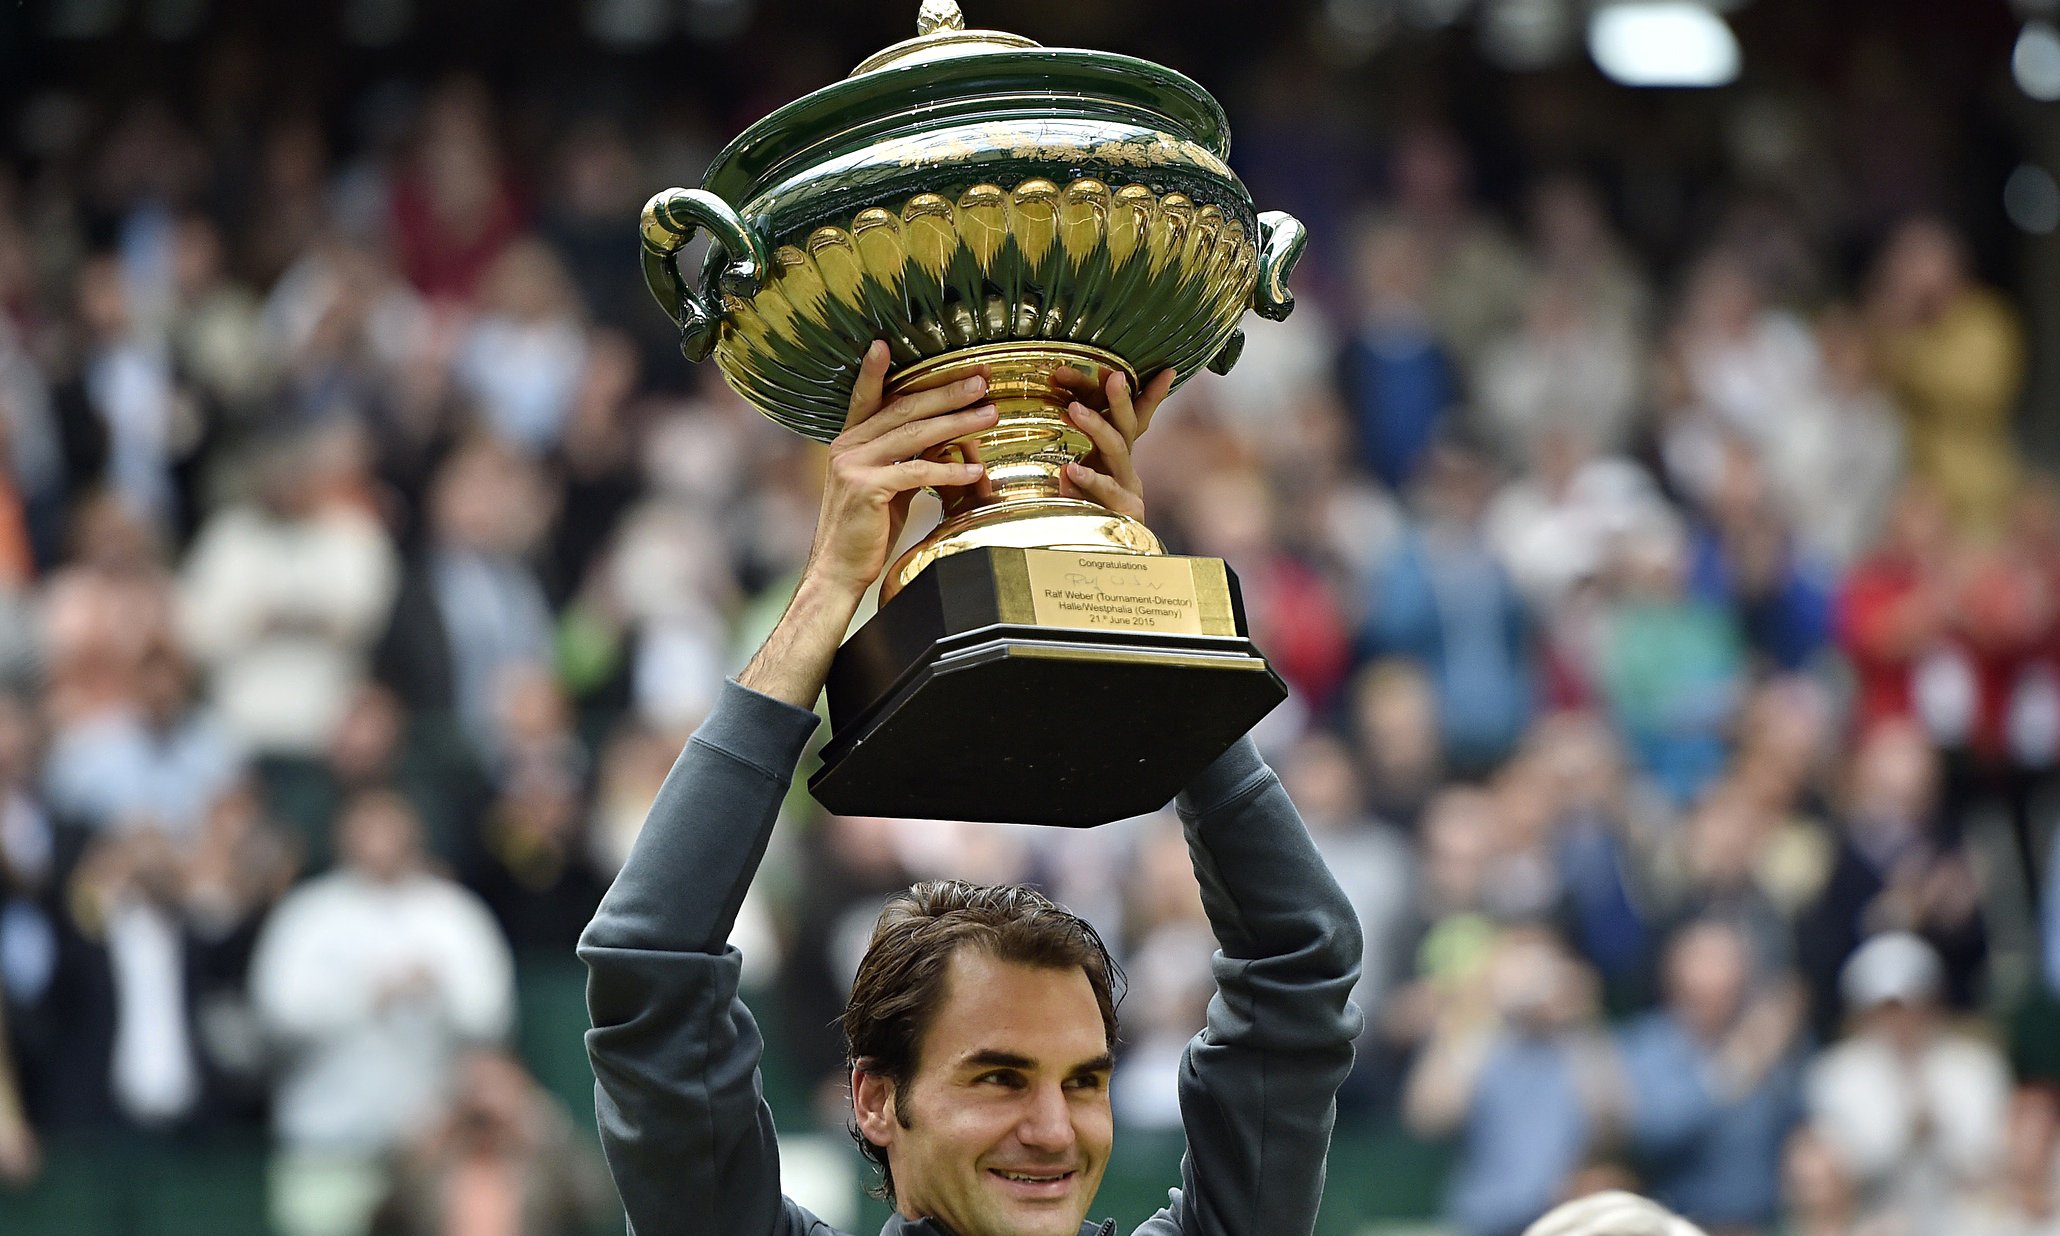 Rolex Roger Federer Halle